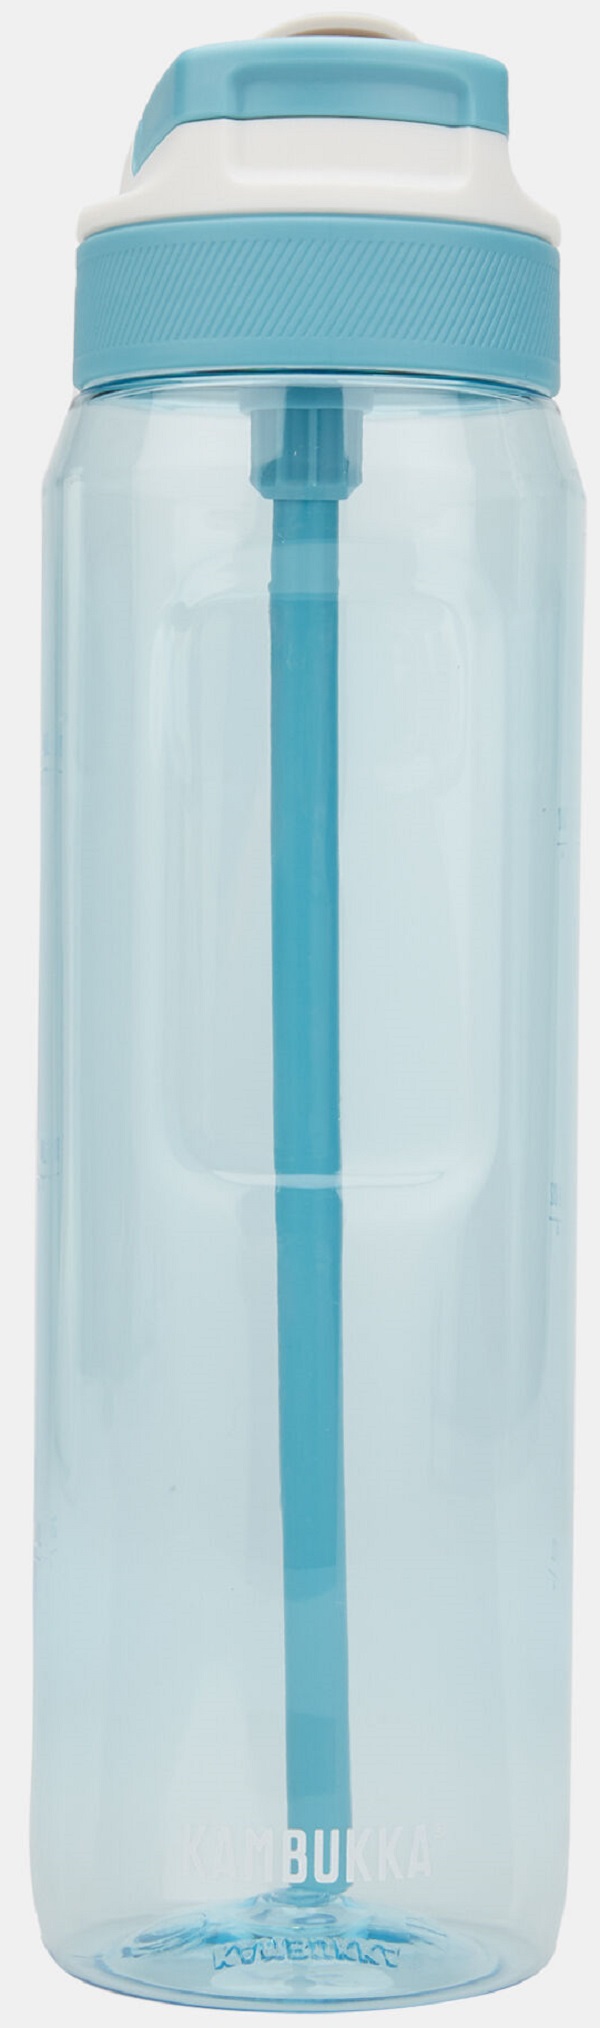 Sticla pentru apa: Arctic Blue